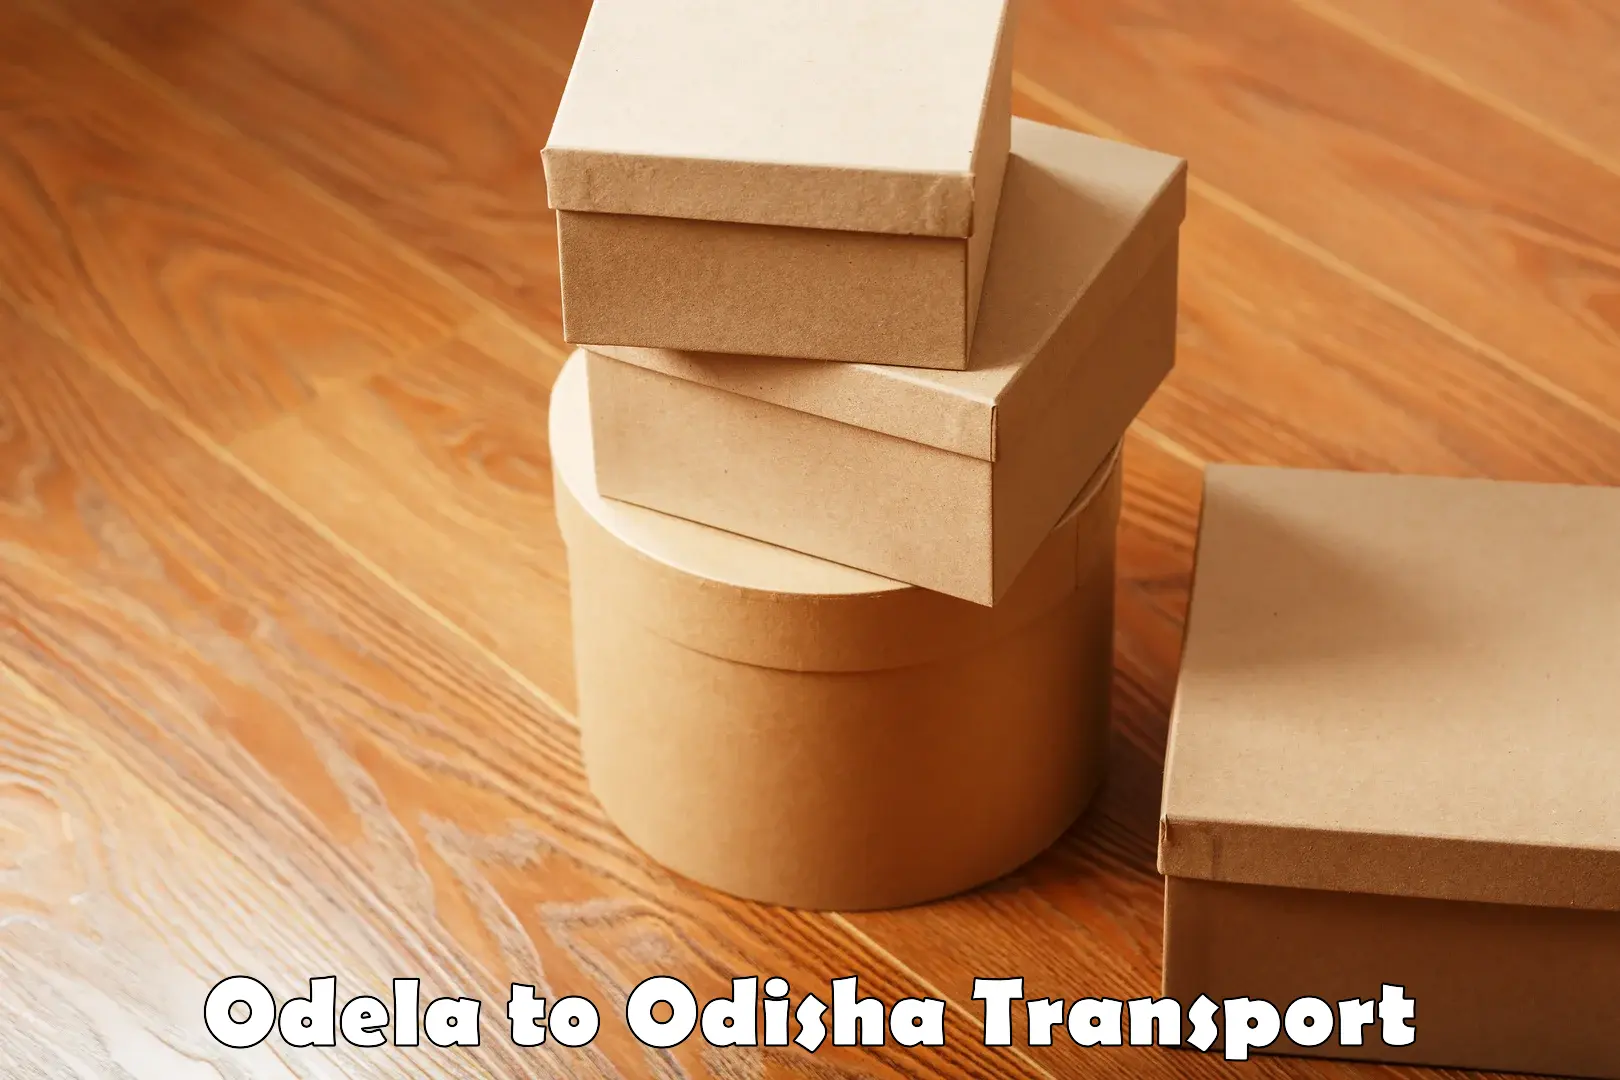 Nearest transport service Odela to Kotapad